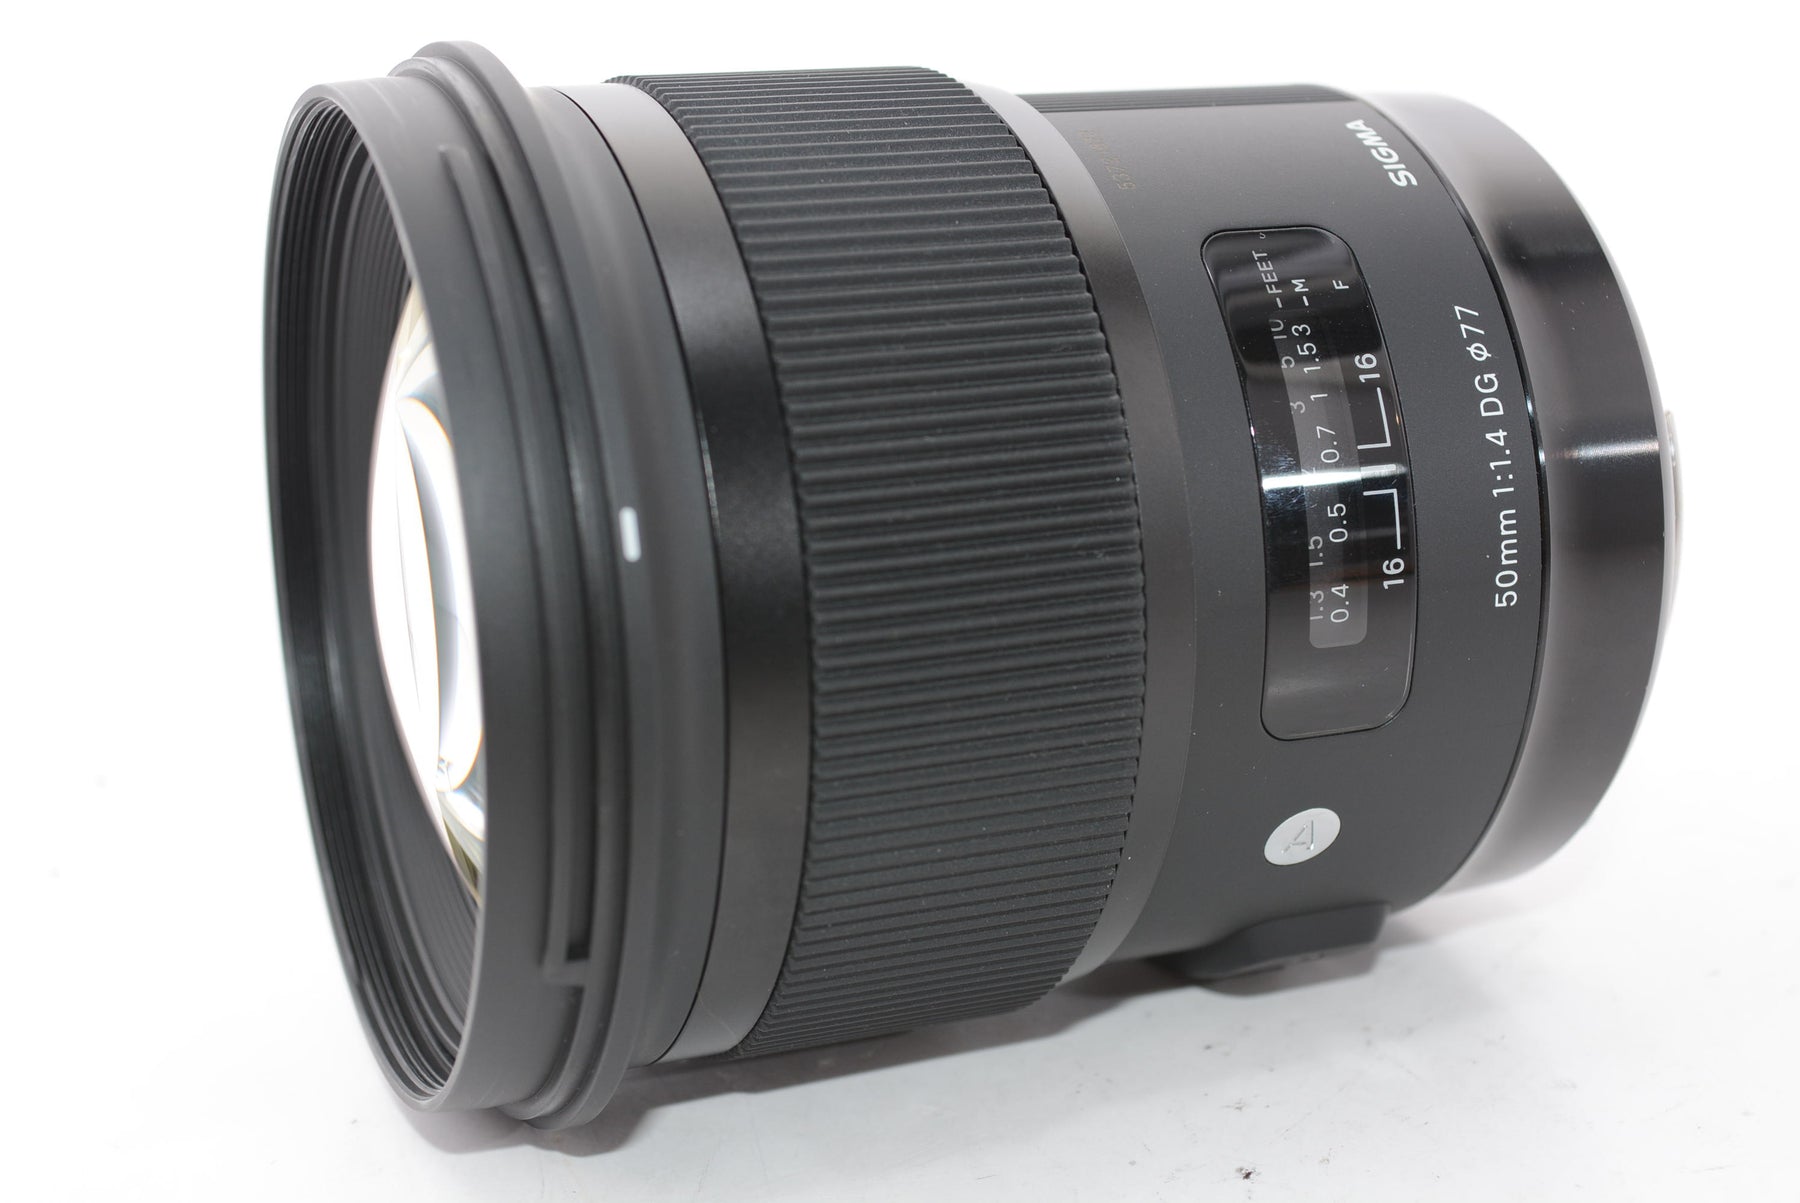 【外観特上級】SIGMA 単焦点標準レンズ Art 50mm F1.4 DG HSM キヤノン用 フルサイズ対応 311544